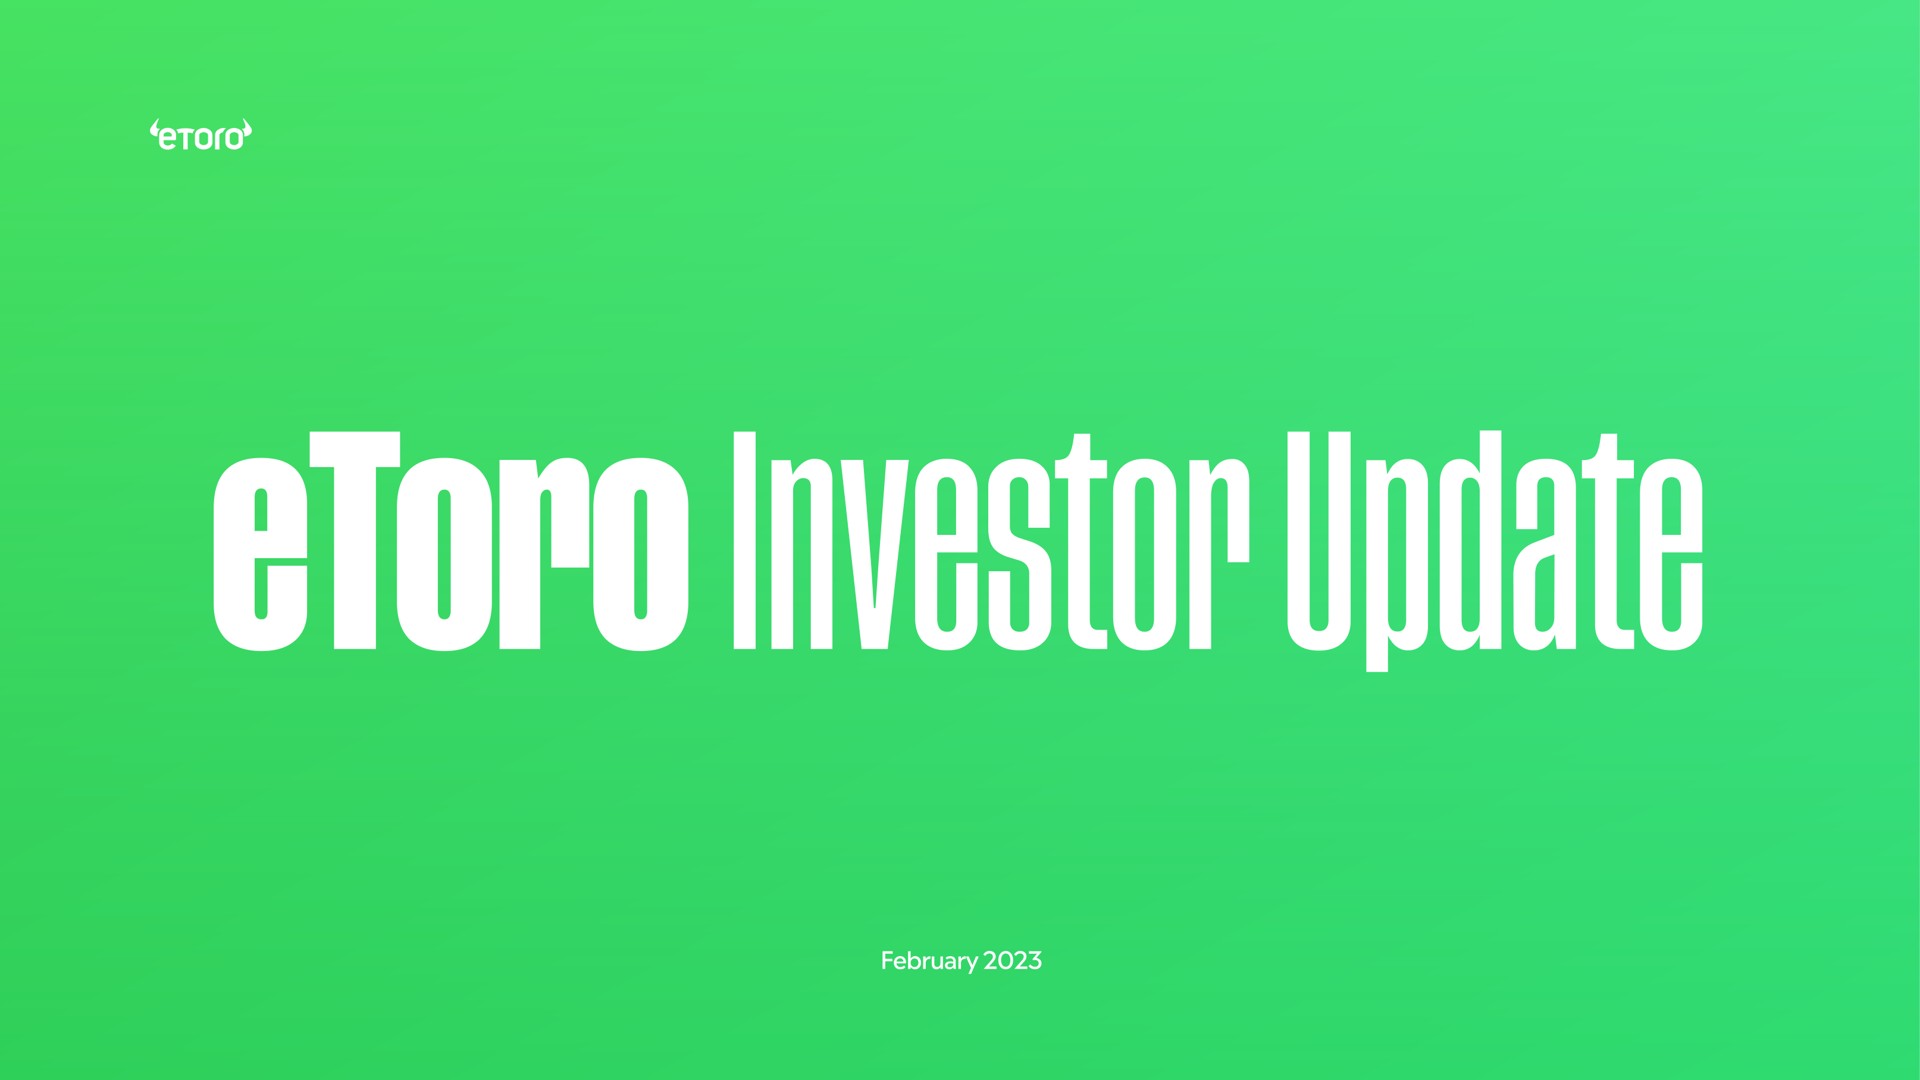 investor update out cum | eToro